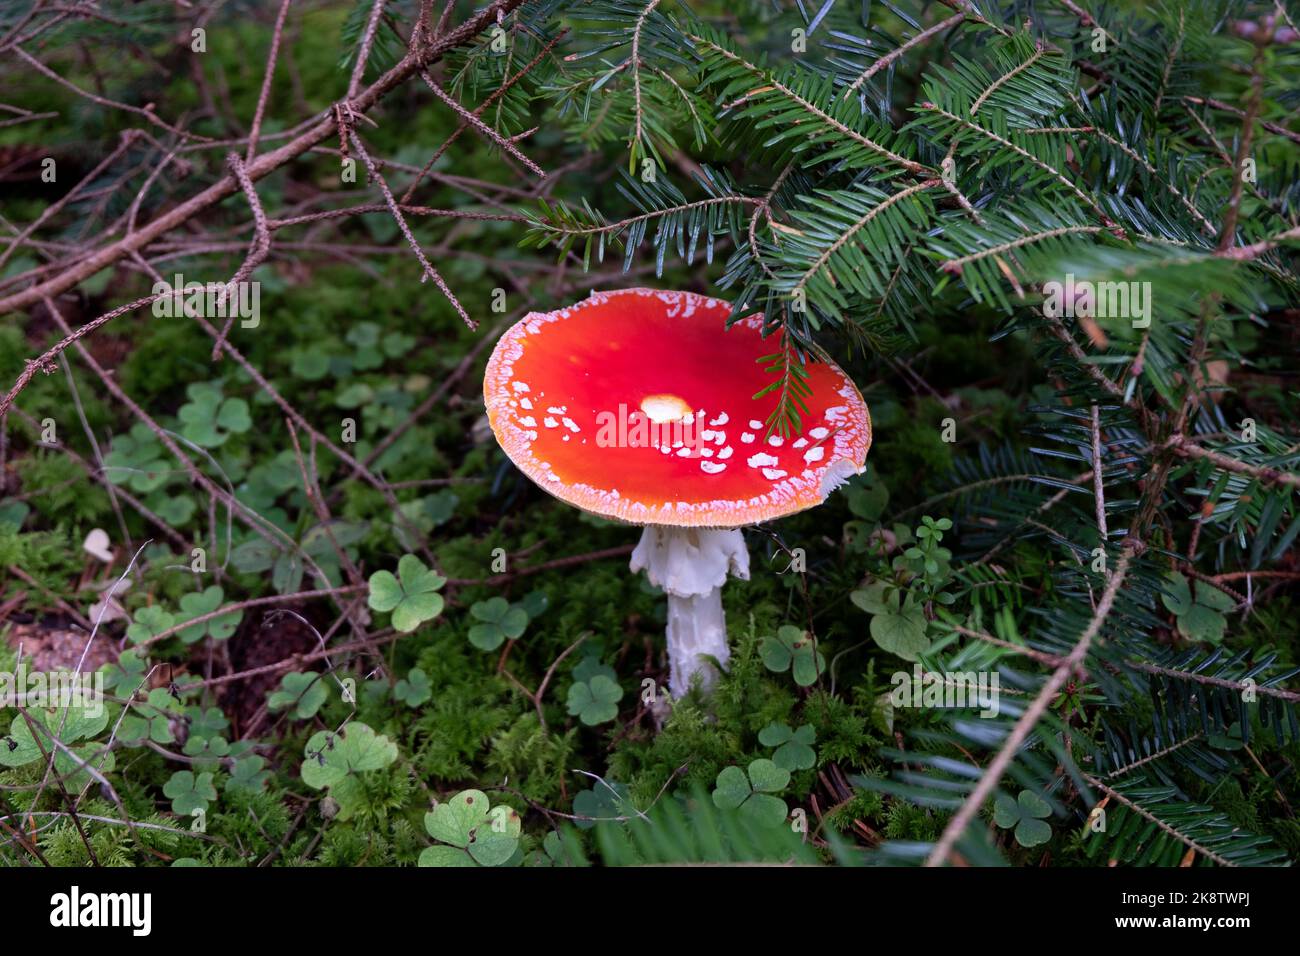 Champignons amanita muscaria rouges dans une forêt. Champignons mystiques rouges sur les feuilles vertes de terre. Banque D'Images